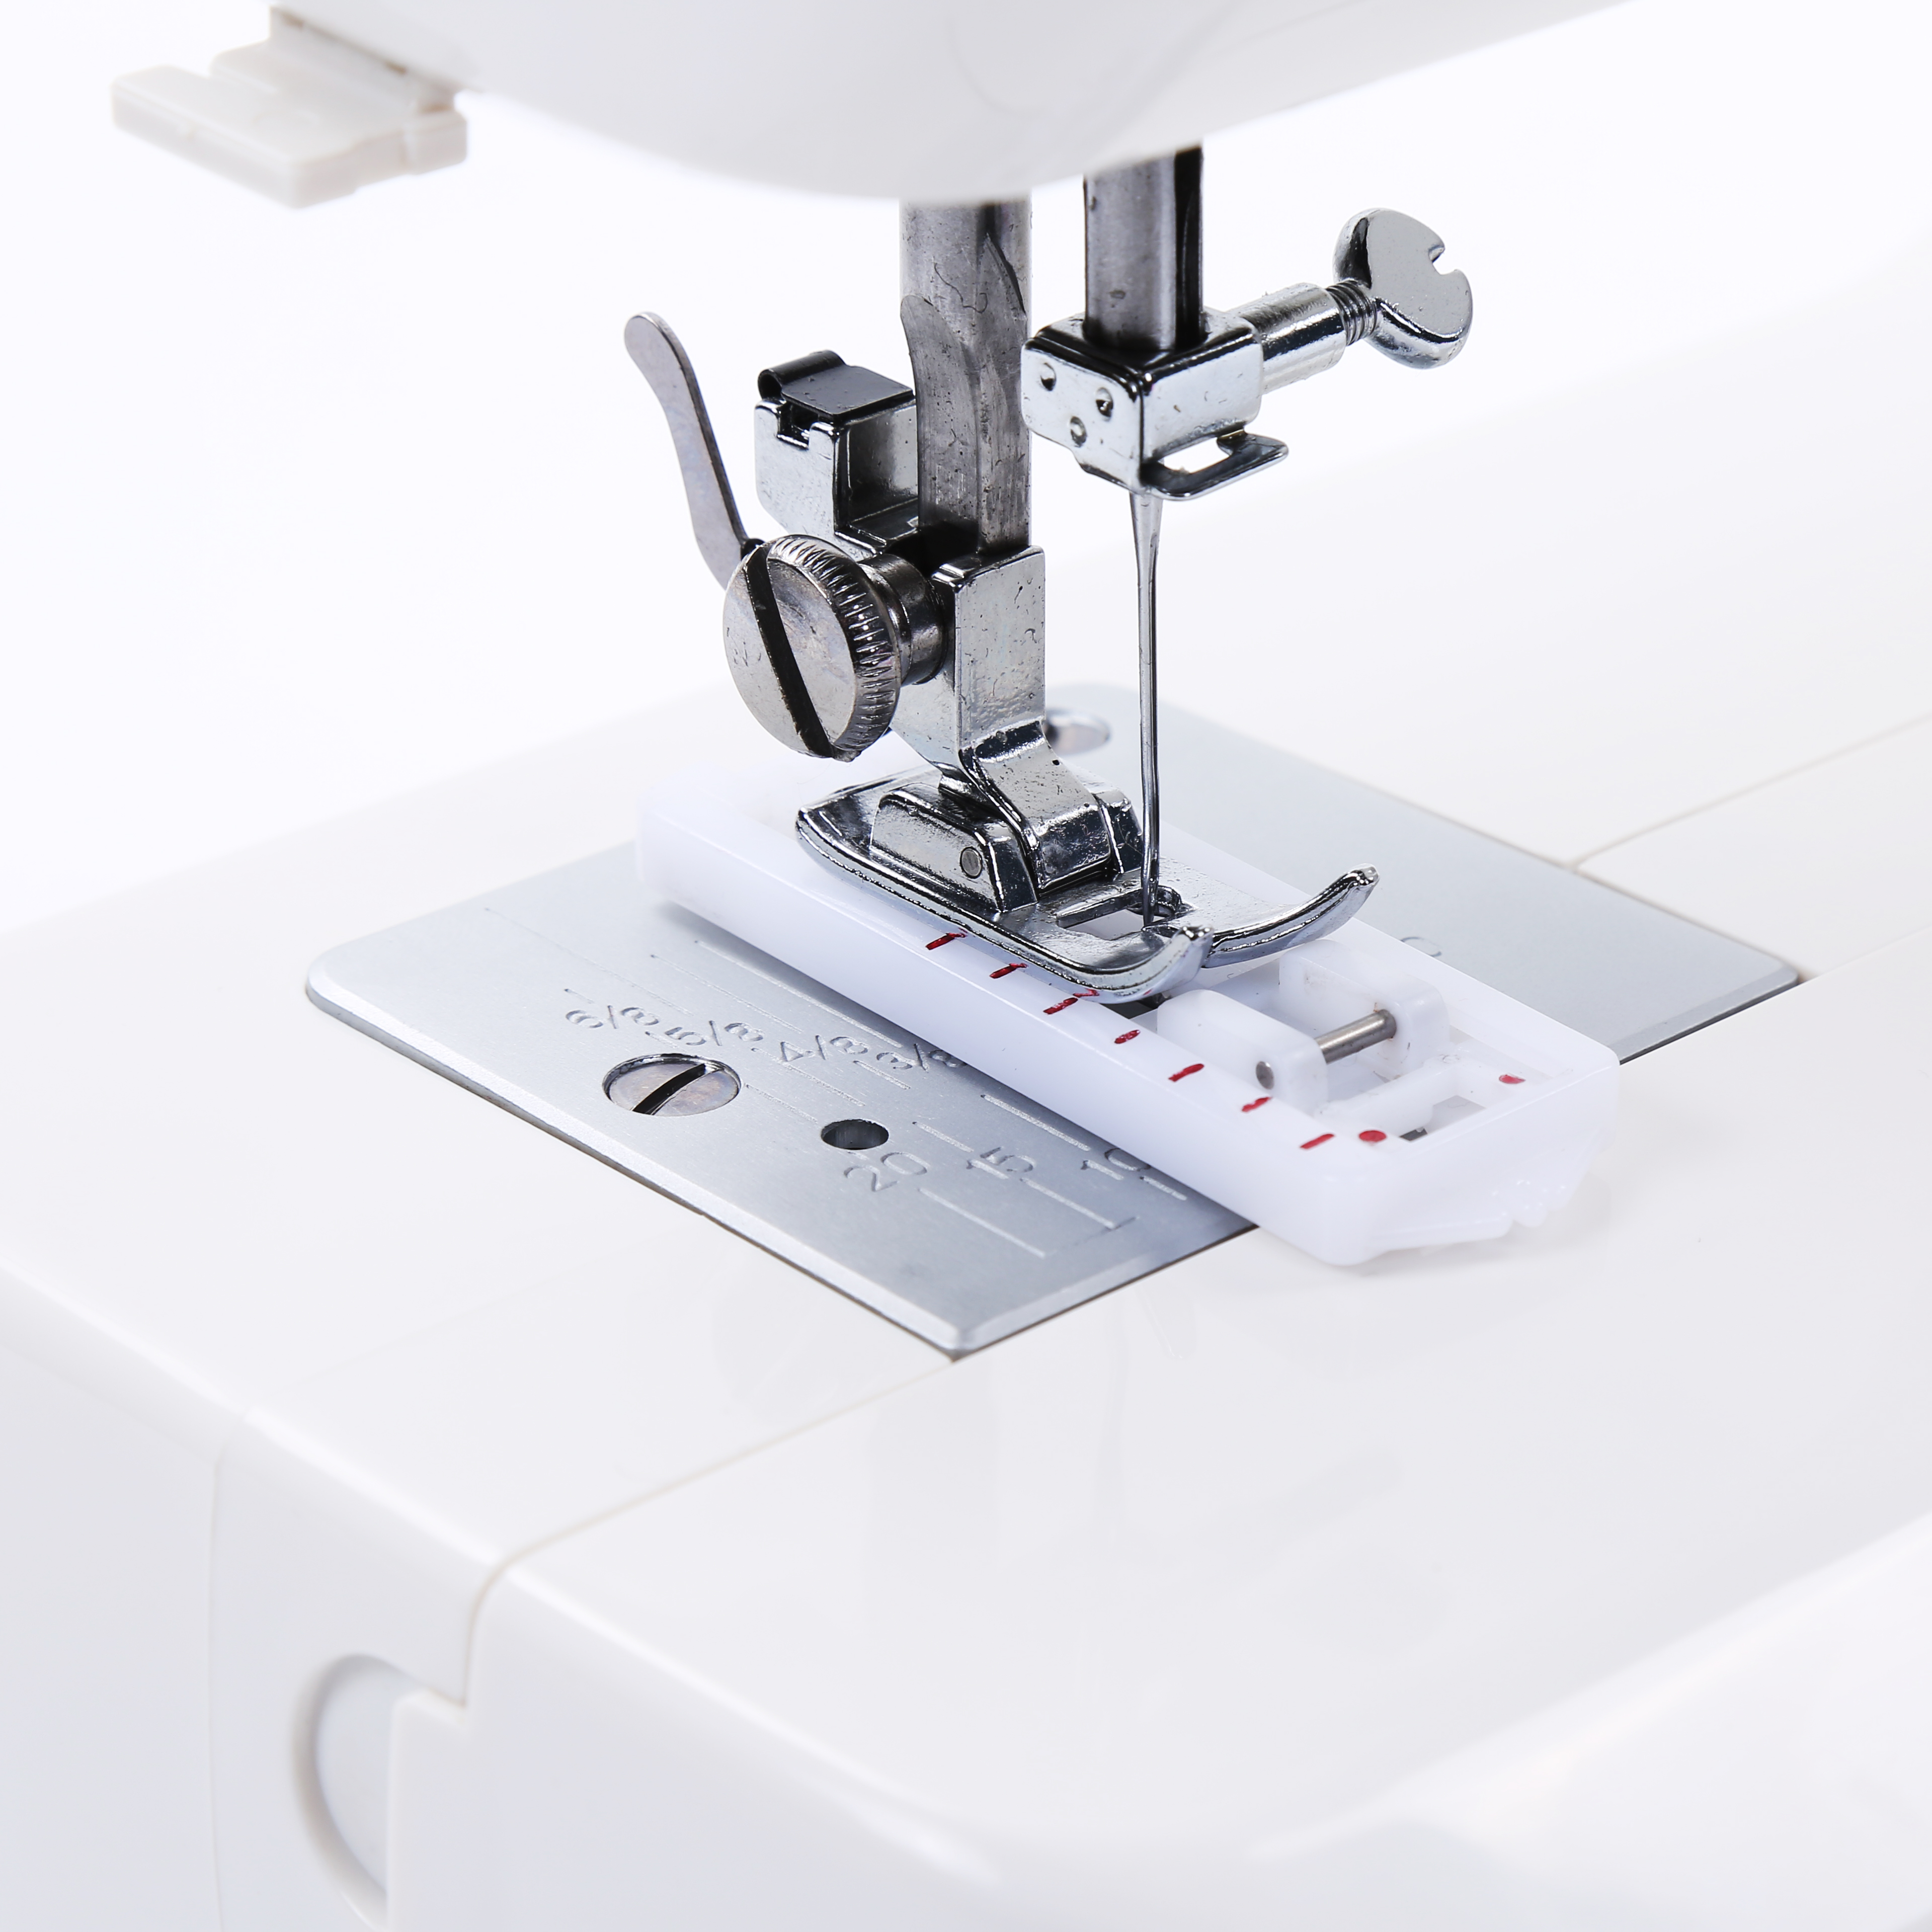 BAI BUTTERFLY JA2 2 Máquina de coser para el hogar para la máquina de coser de la Fábrica ACME